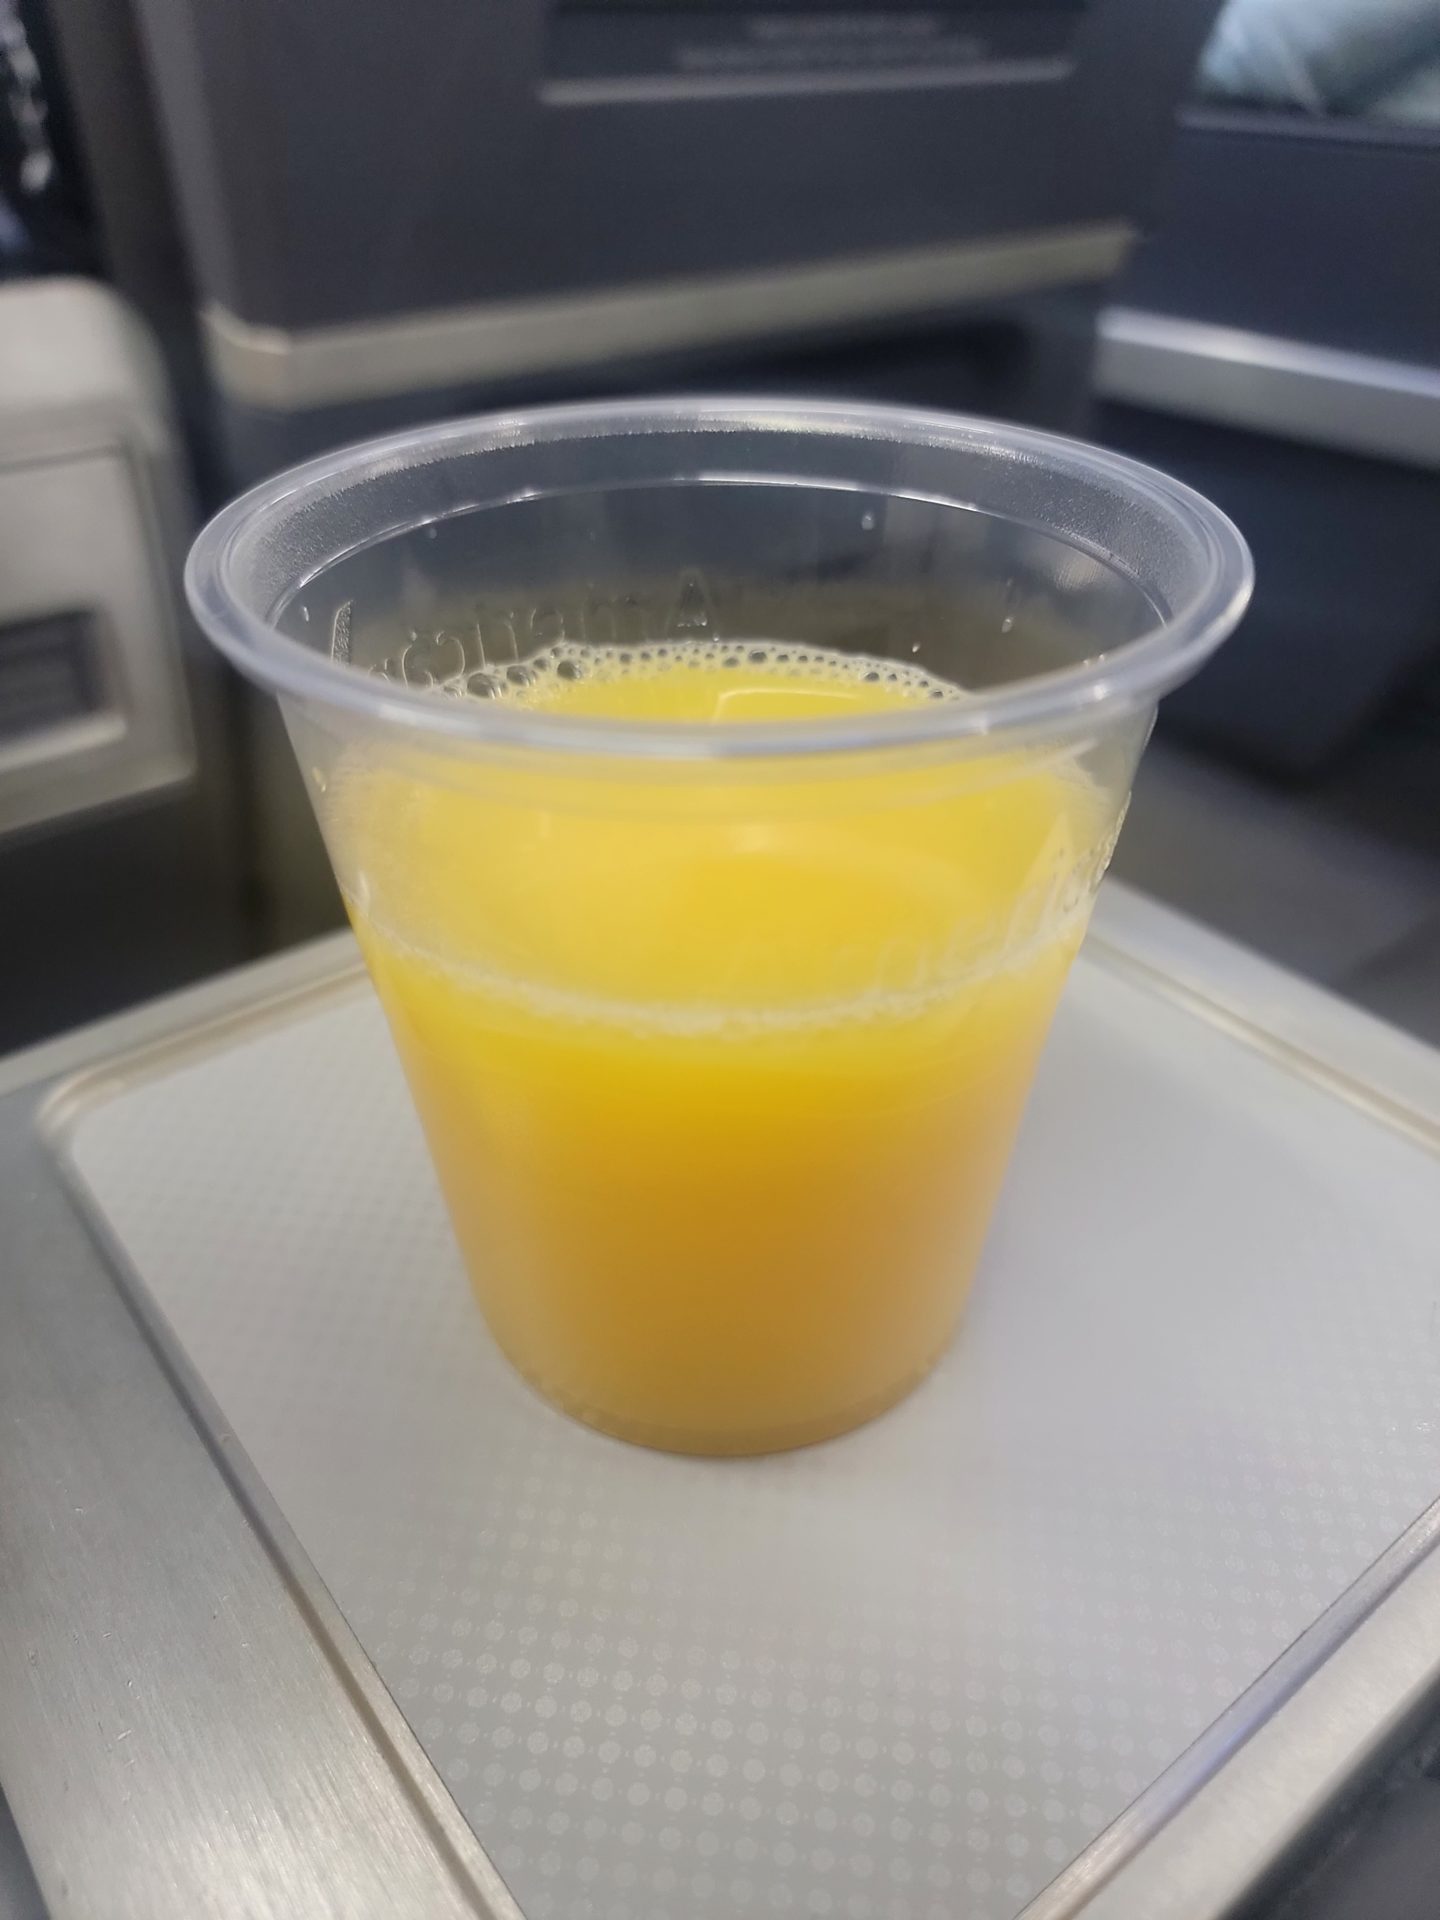 a plastic cup of orange juice